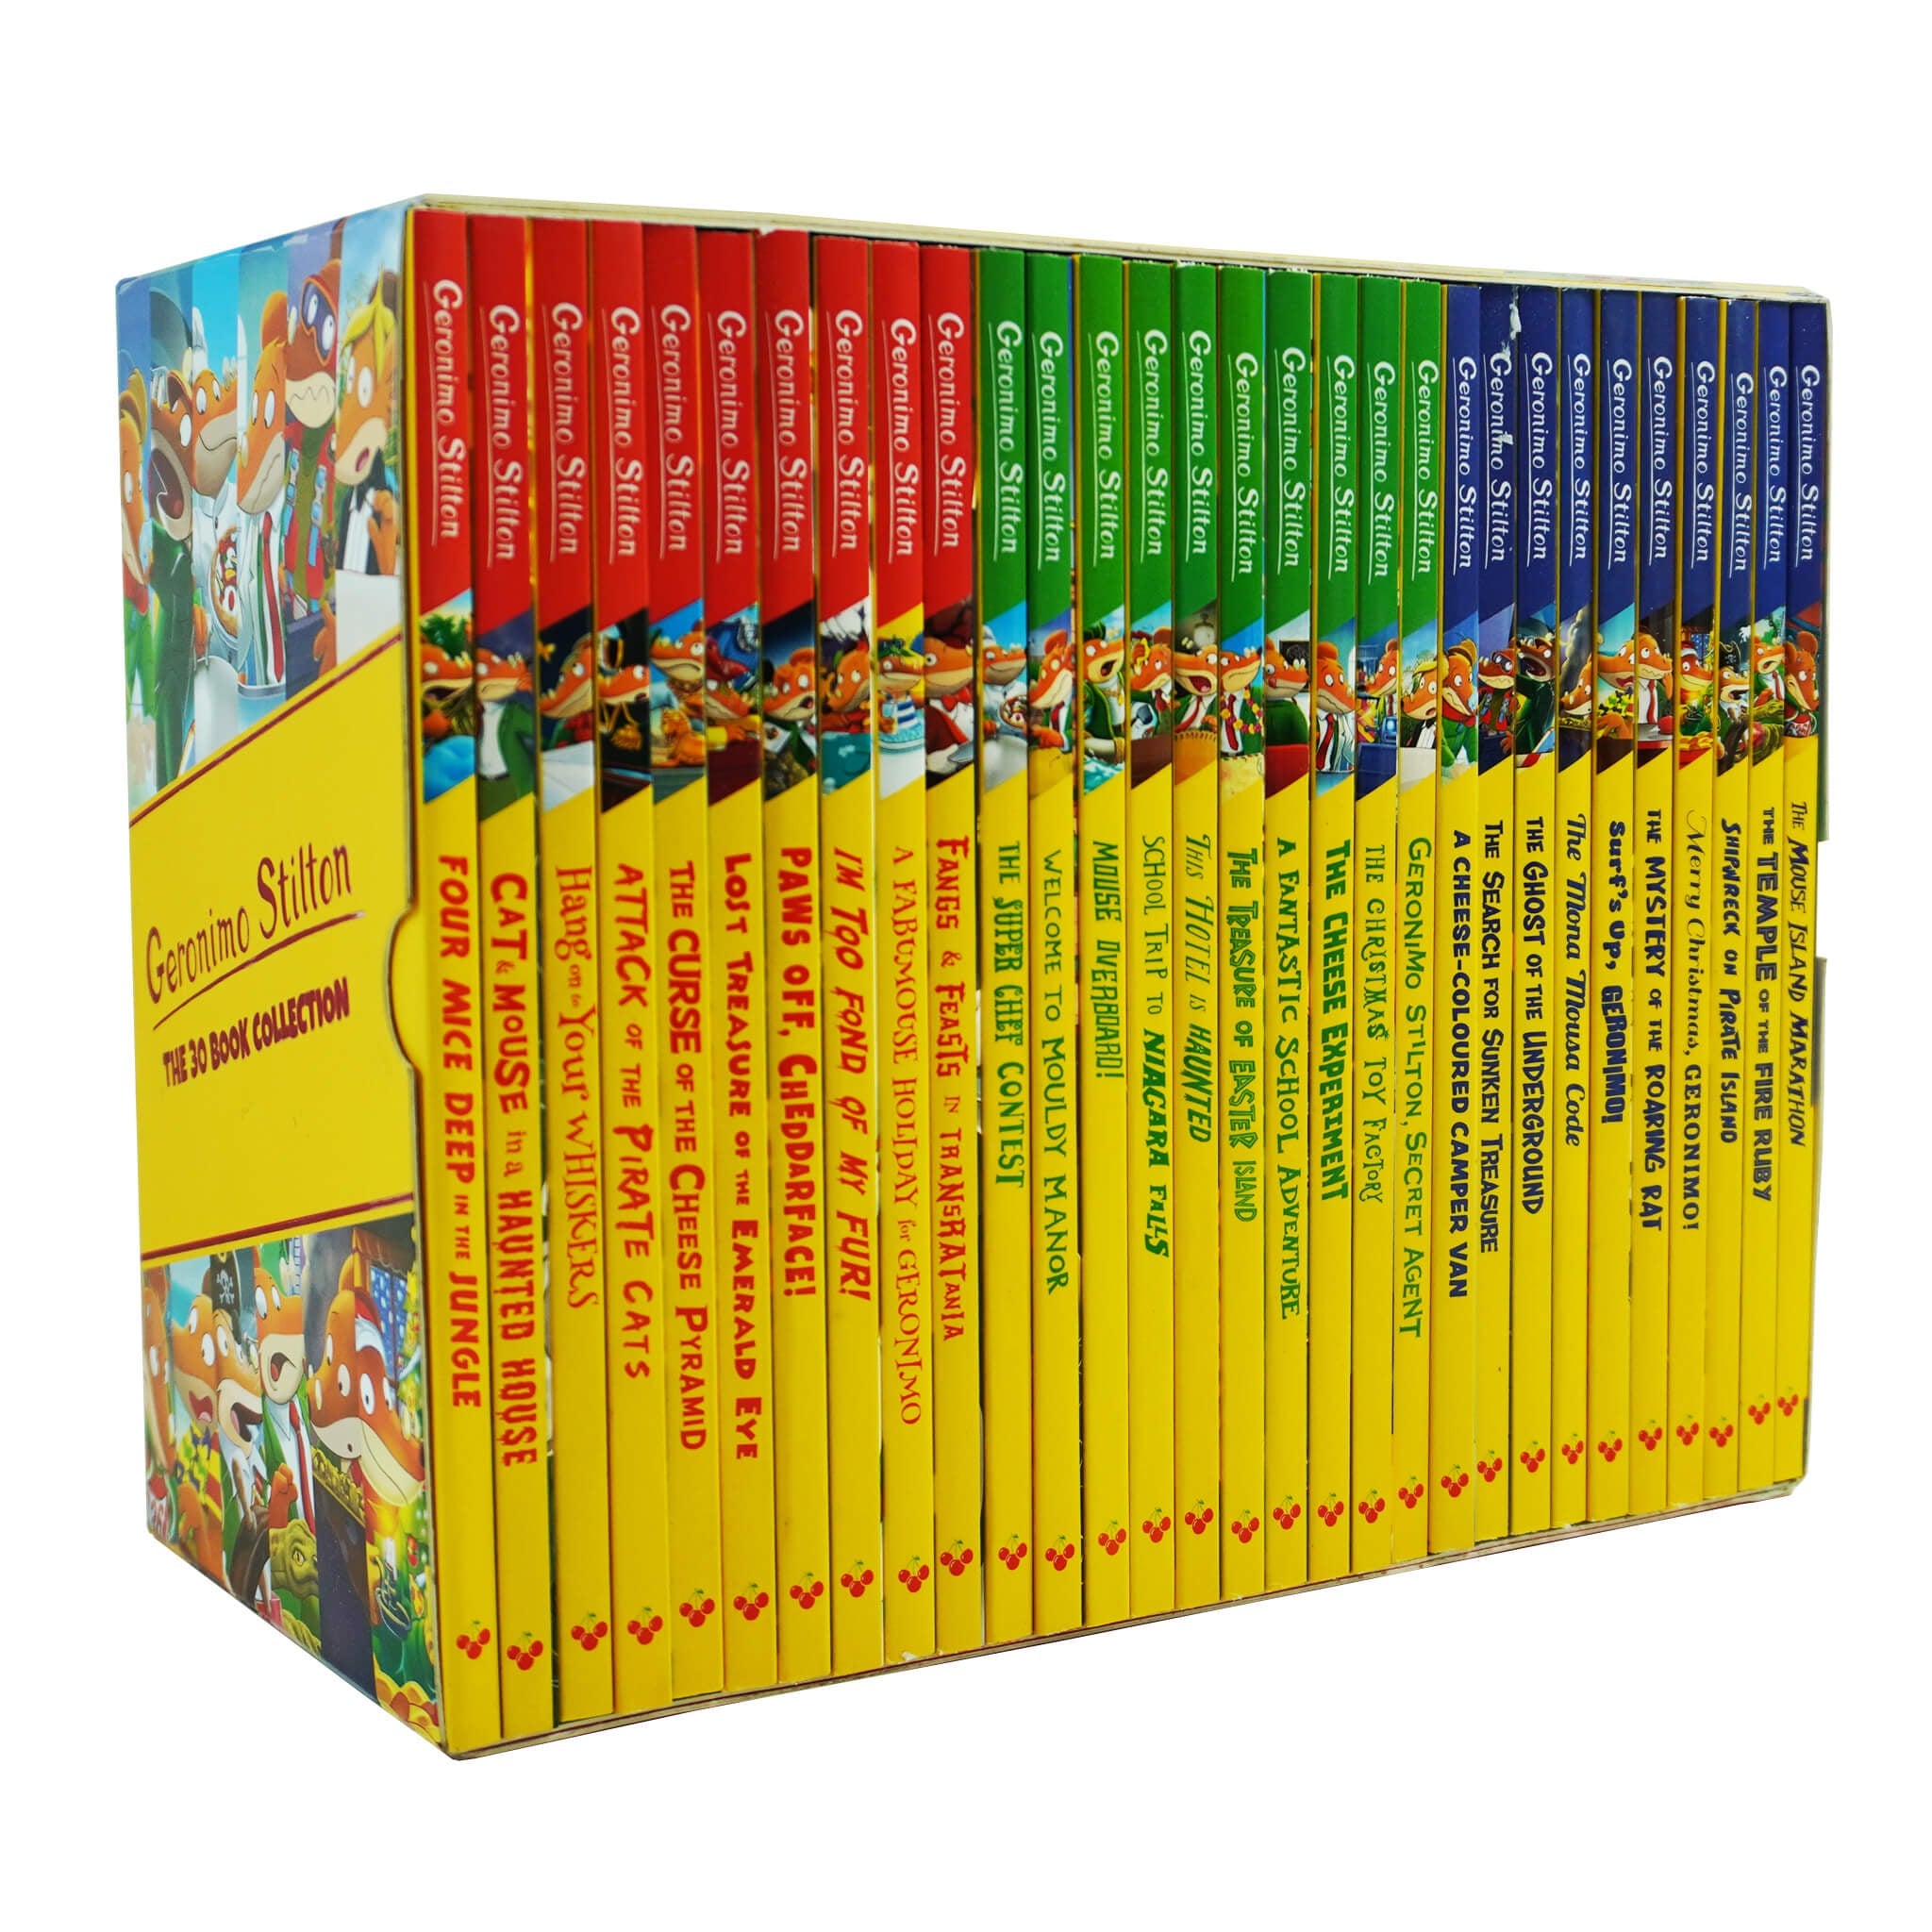 Geronimo Stilton Four Cheese Box Set (Books 1-4) -- Geronimo Stilton 